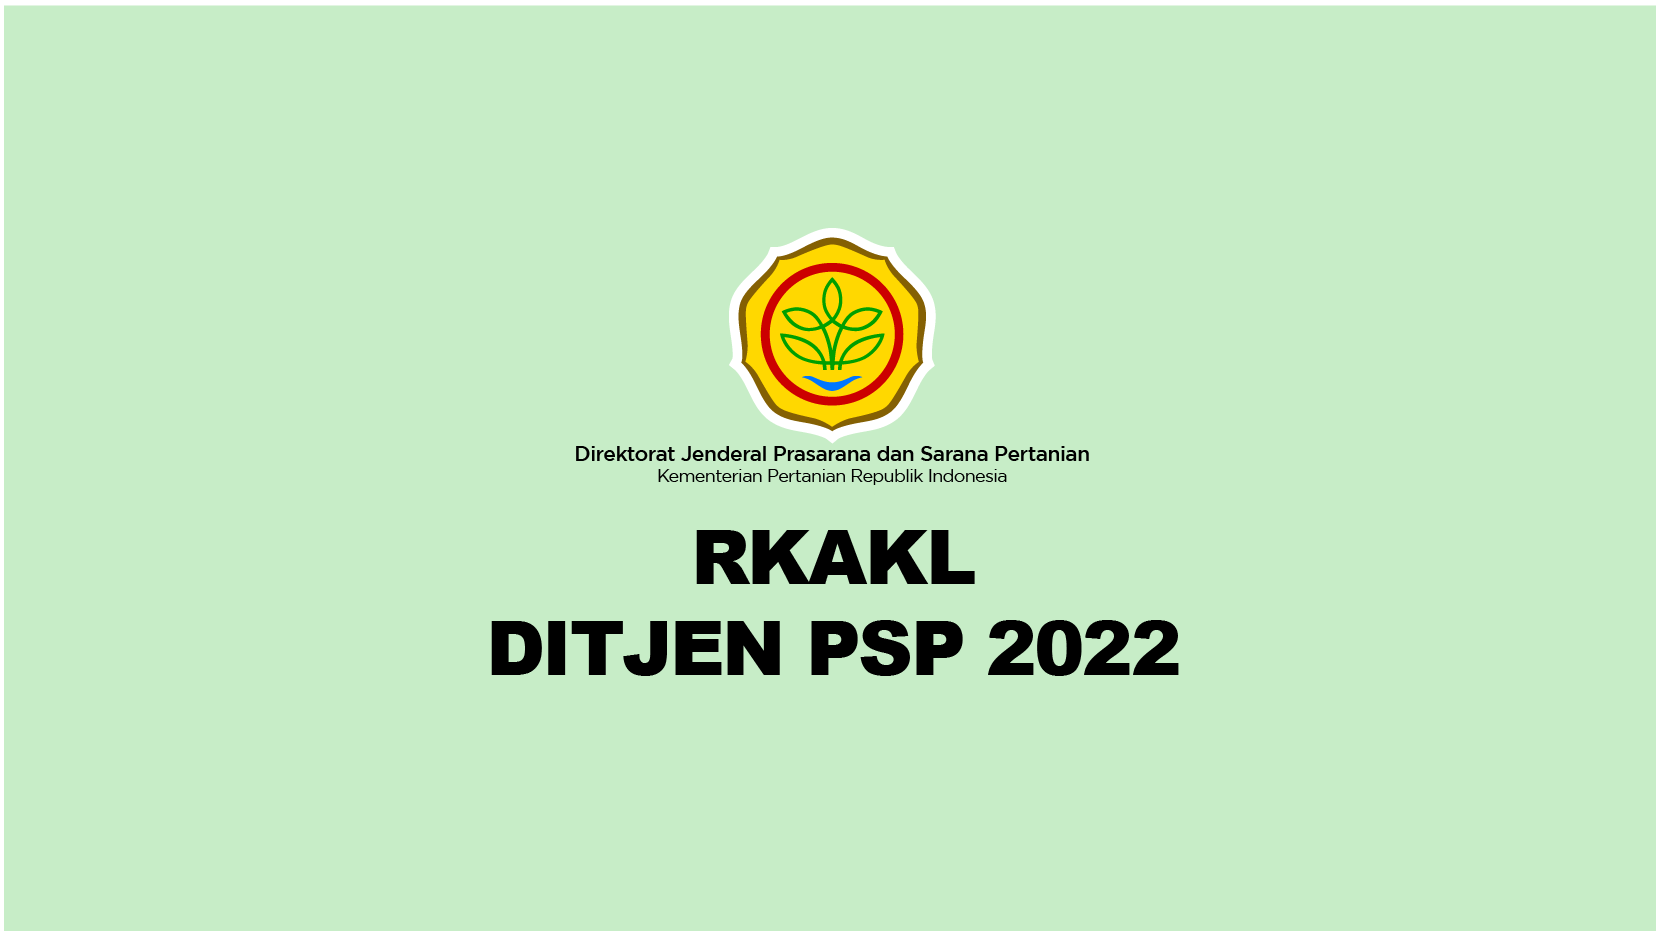 RKA-KL DITJEN PSP 2022